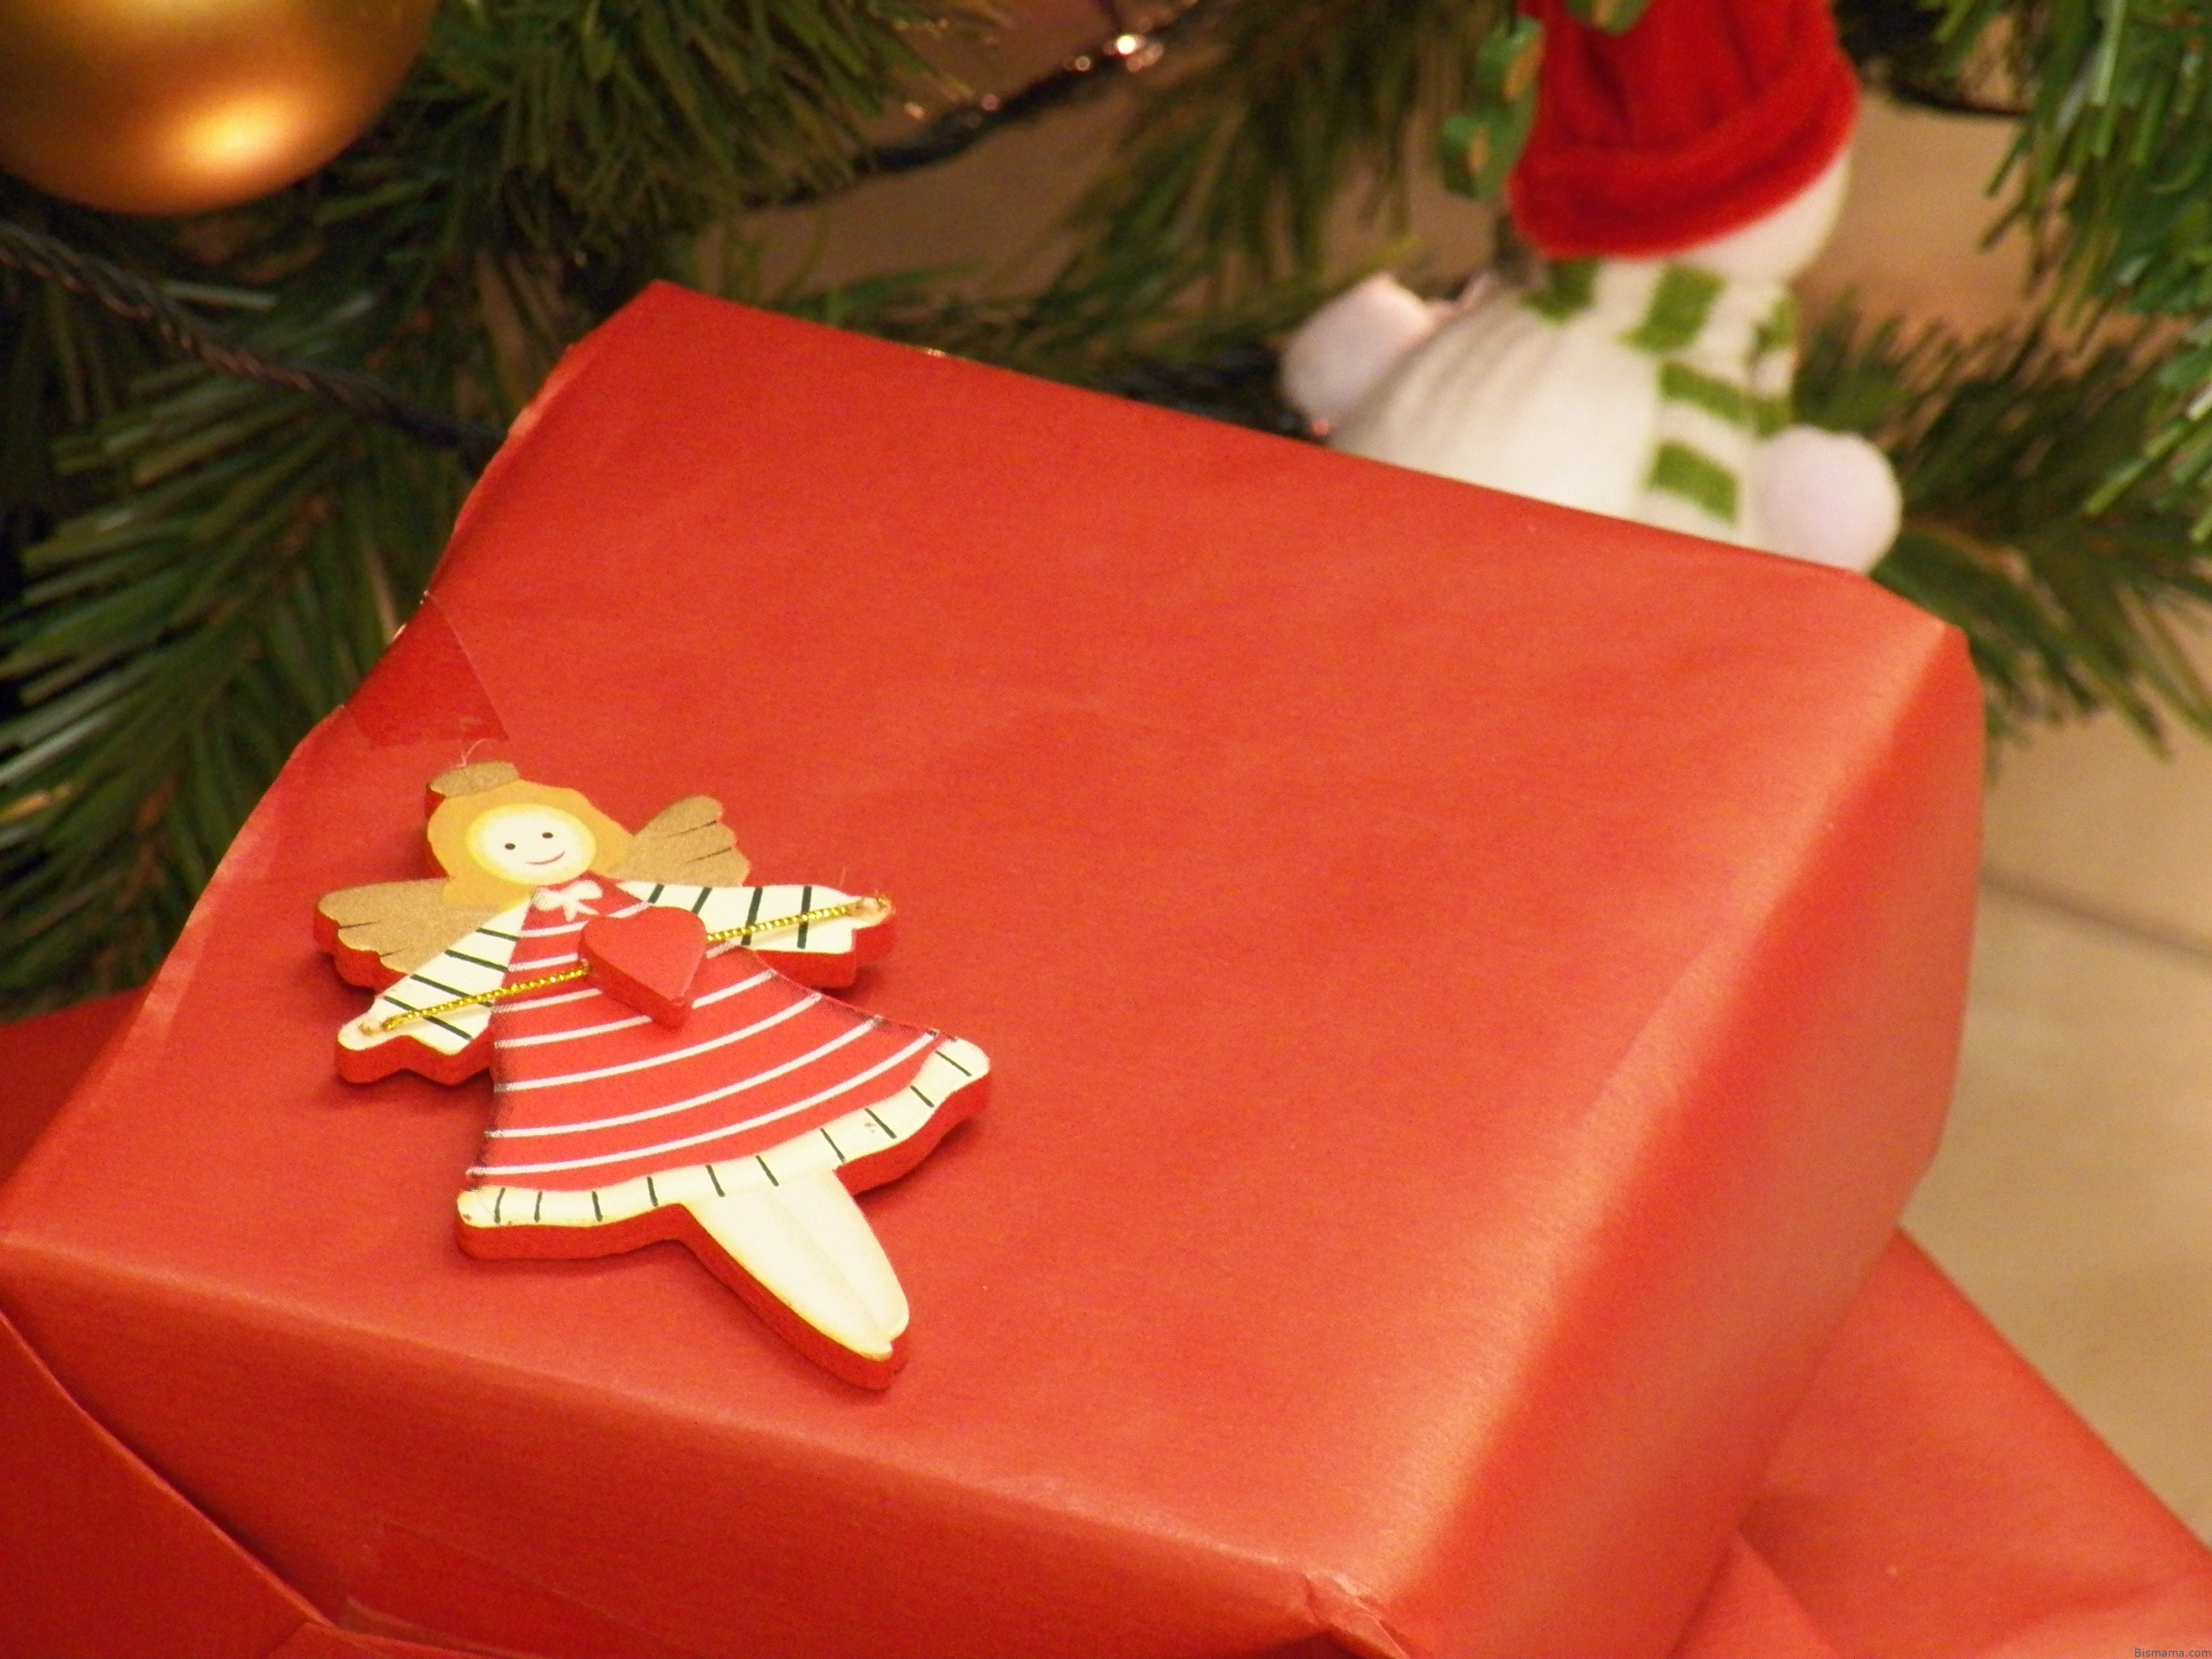 Impacchettare Regali Di Natale.Packaging Come Incartare I Regali Di Natale In Modo Originale Bismama